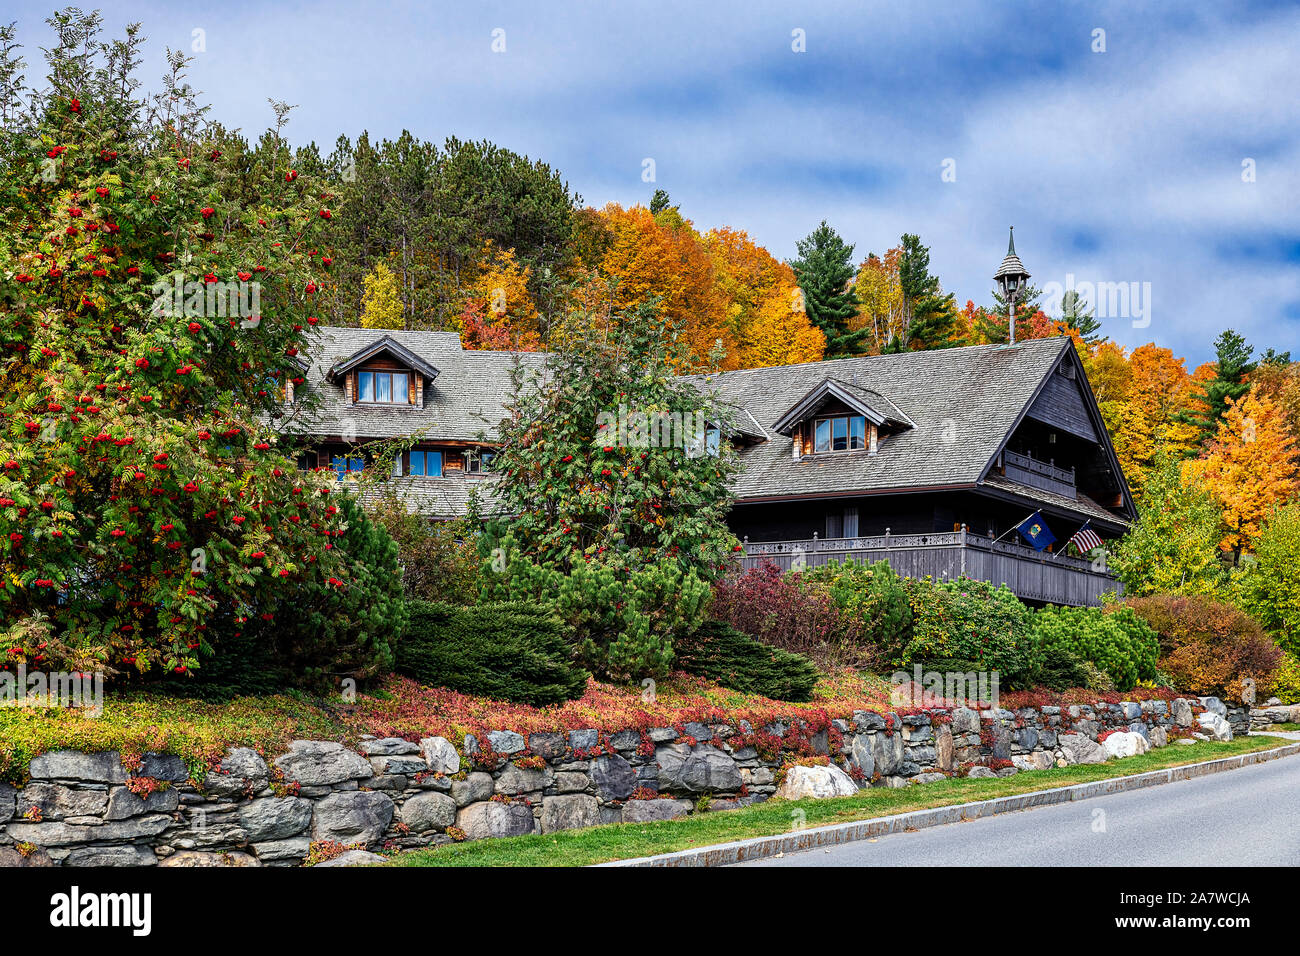 Von Trapp Family Lodge, Stowe, Vermont, USA. Stock Photo